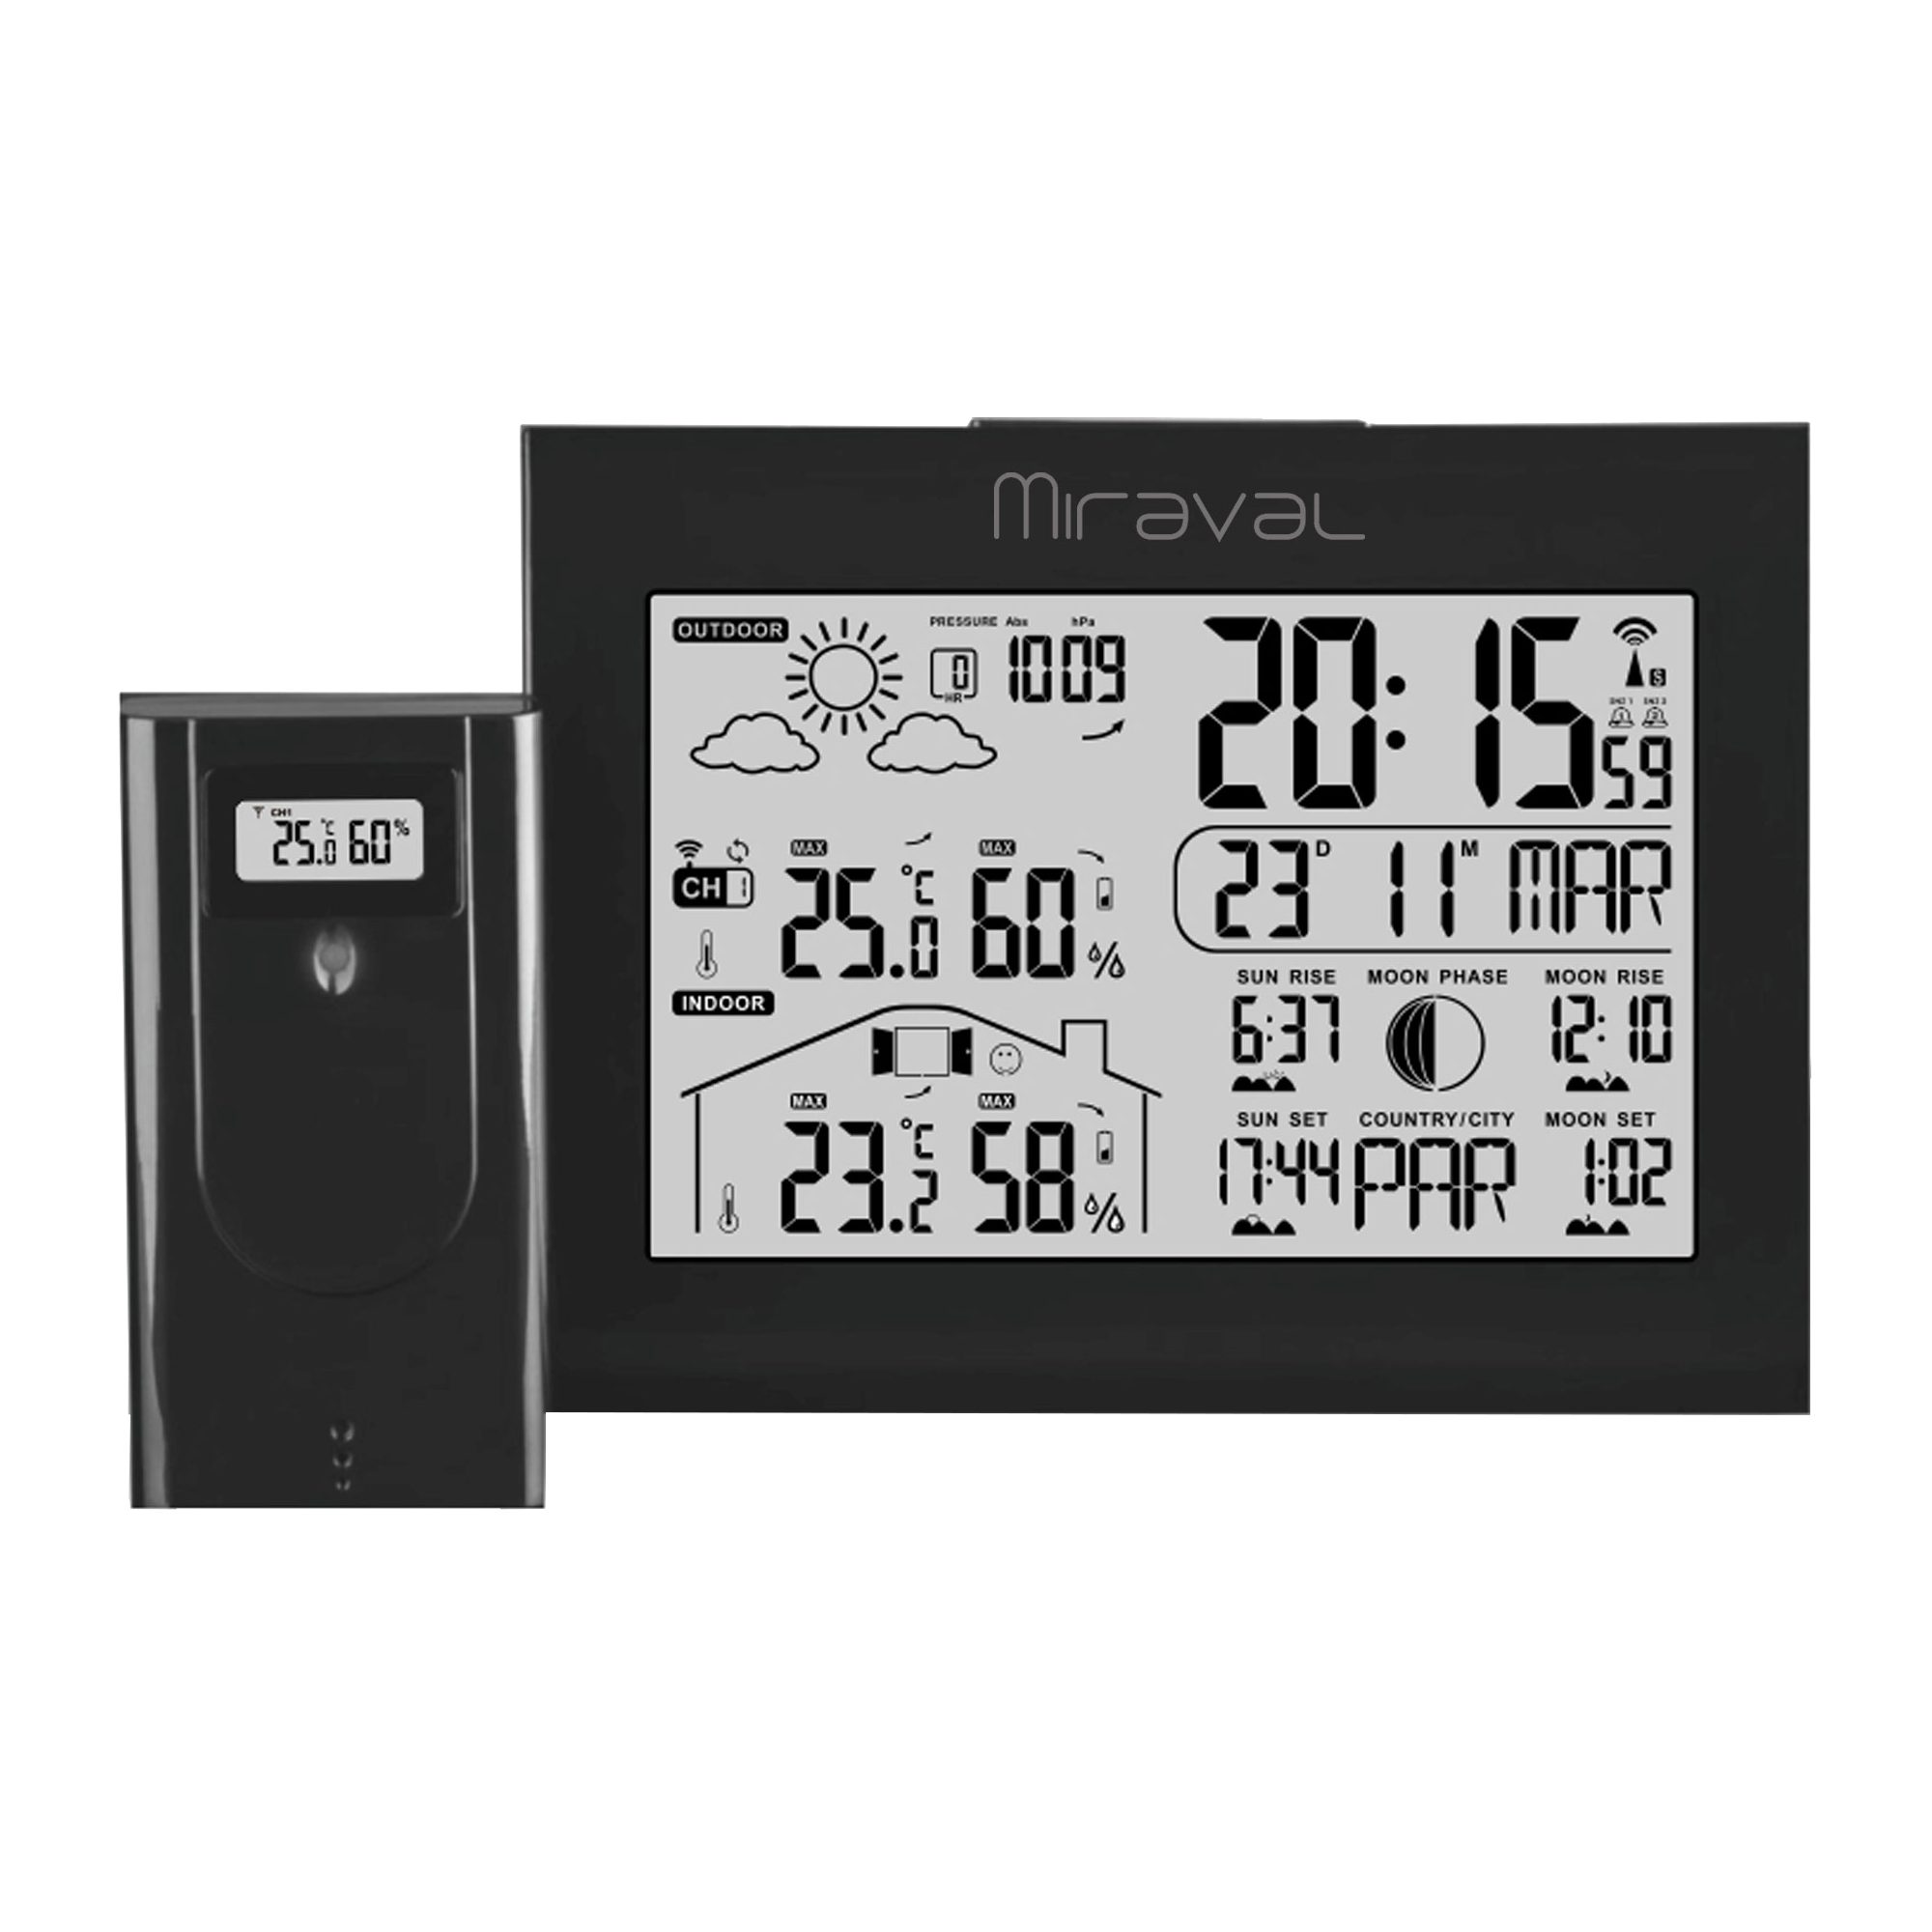 Schwarz mit Miraval Displaybeleuchtung Hygrometer) Funk-Wetterstation LCD Funkwetterstation (Temperaturanzeige Alarm Außensenor Datumsanzeige